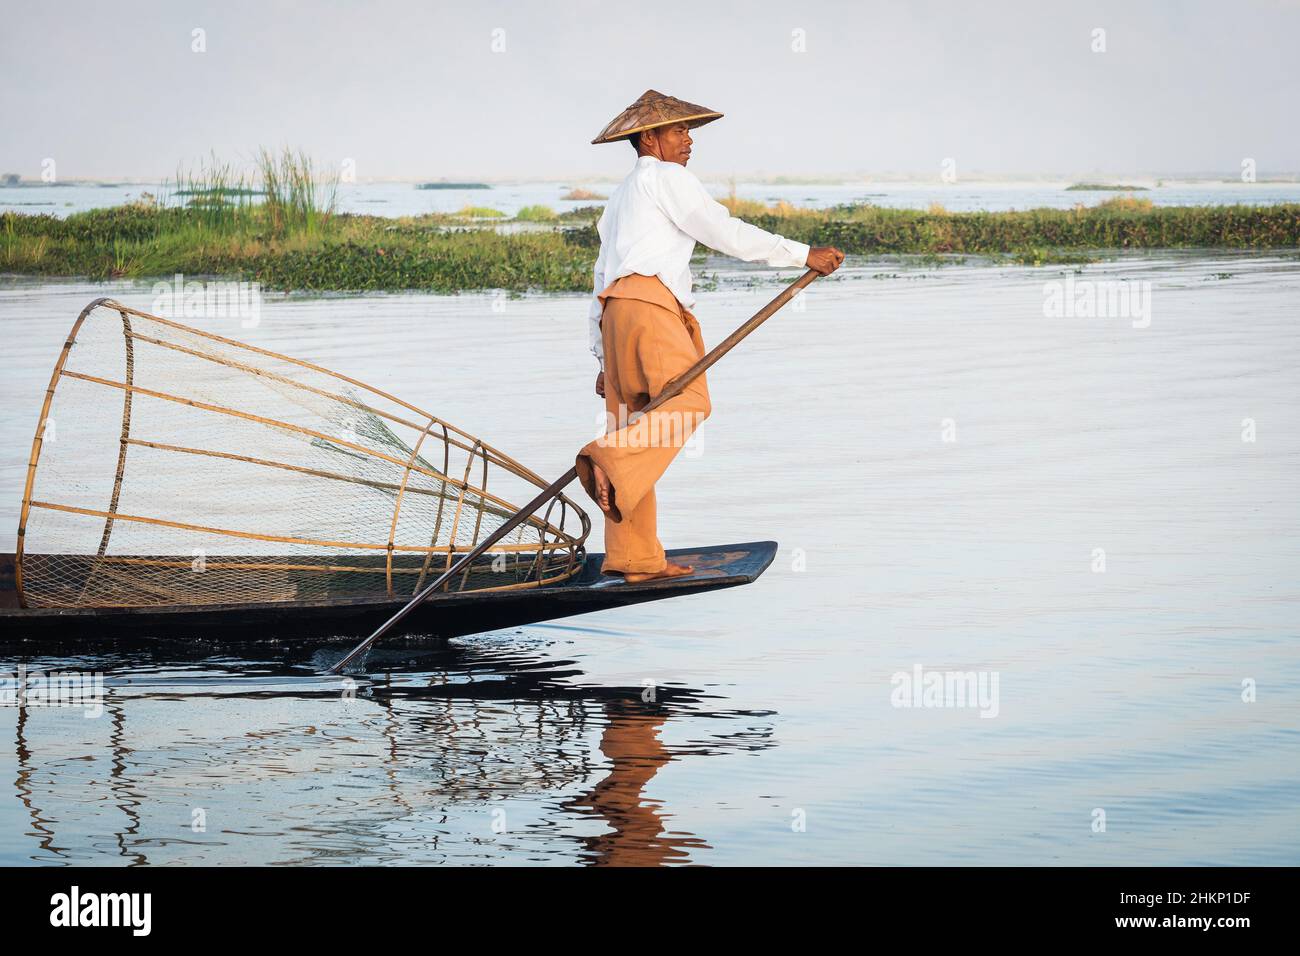 Intha pêche à l'aviron dans un style traditionnel sur le lac Inle, Shan State, Myanmar (Birmanie). Banque D'Images